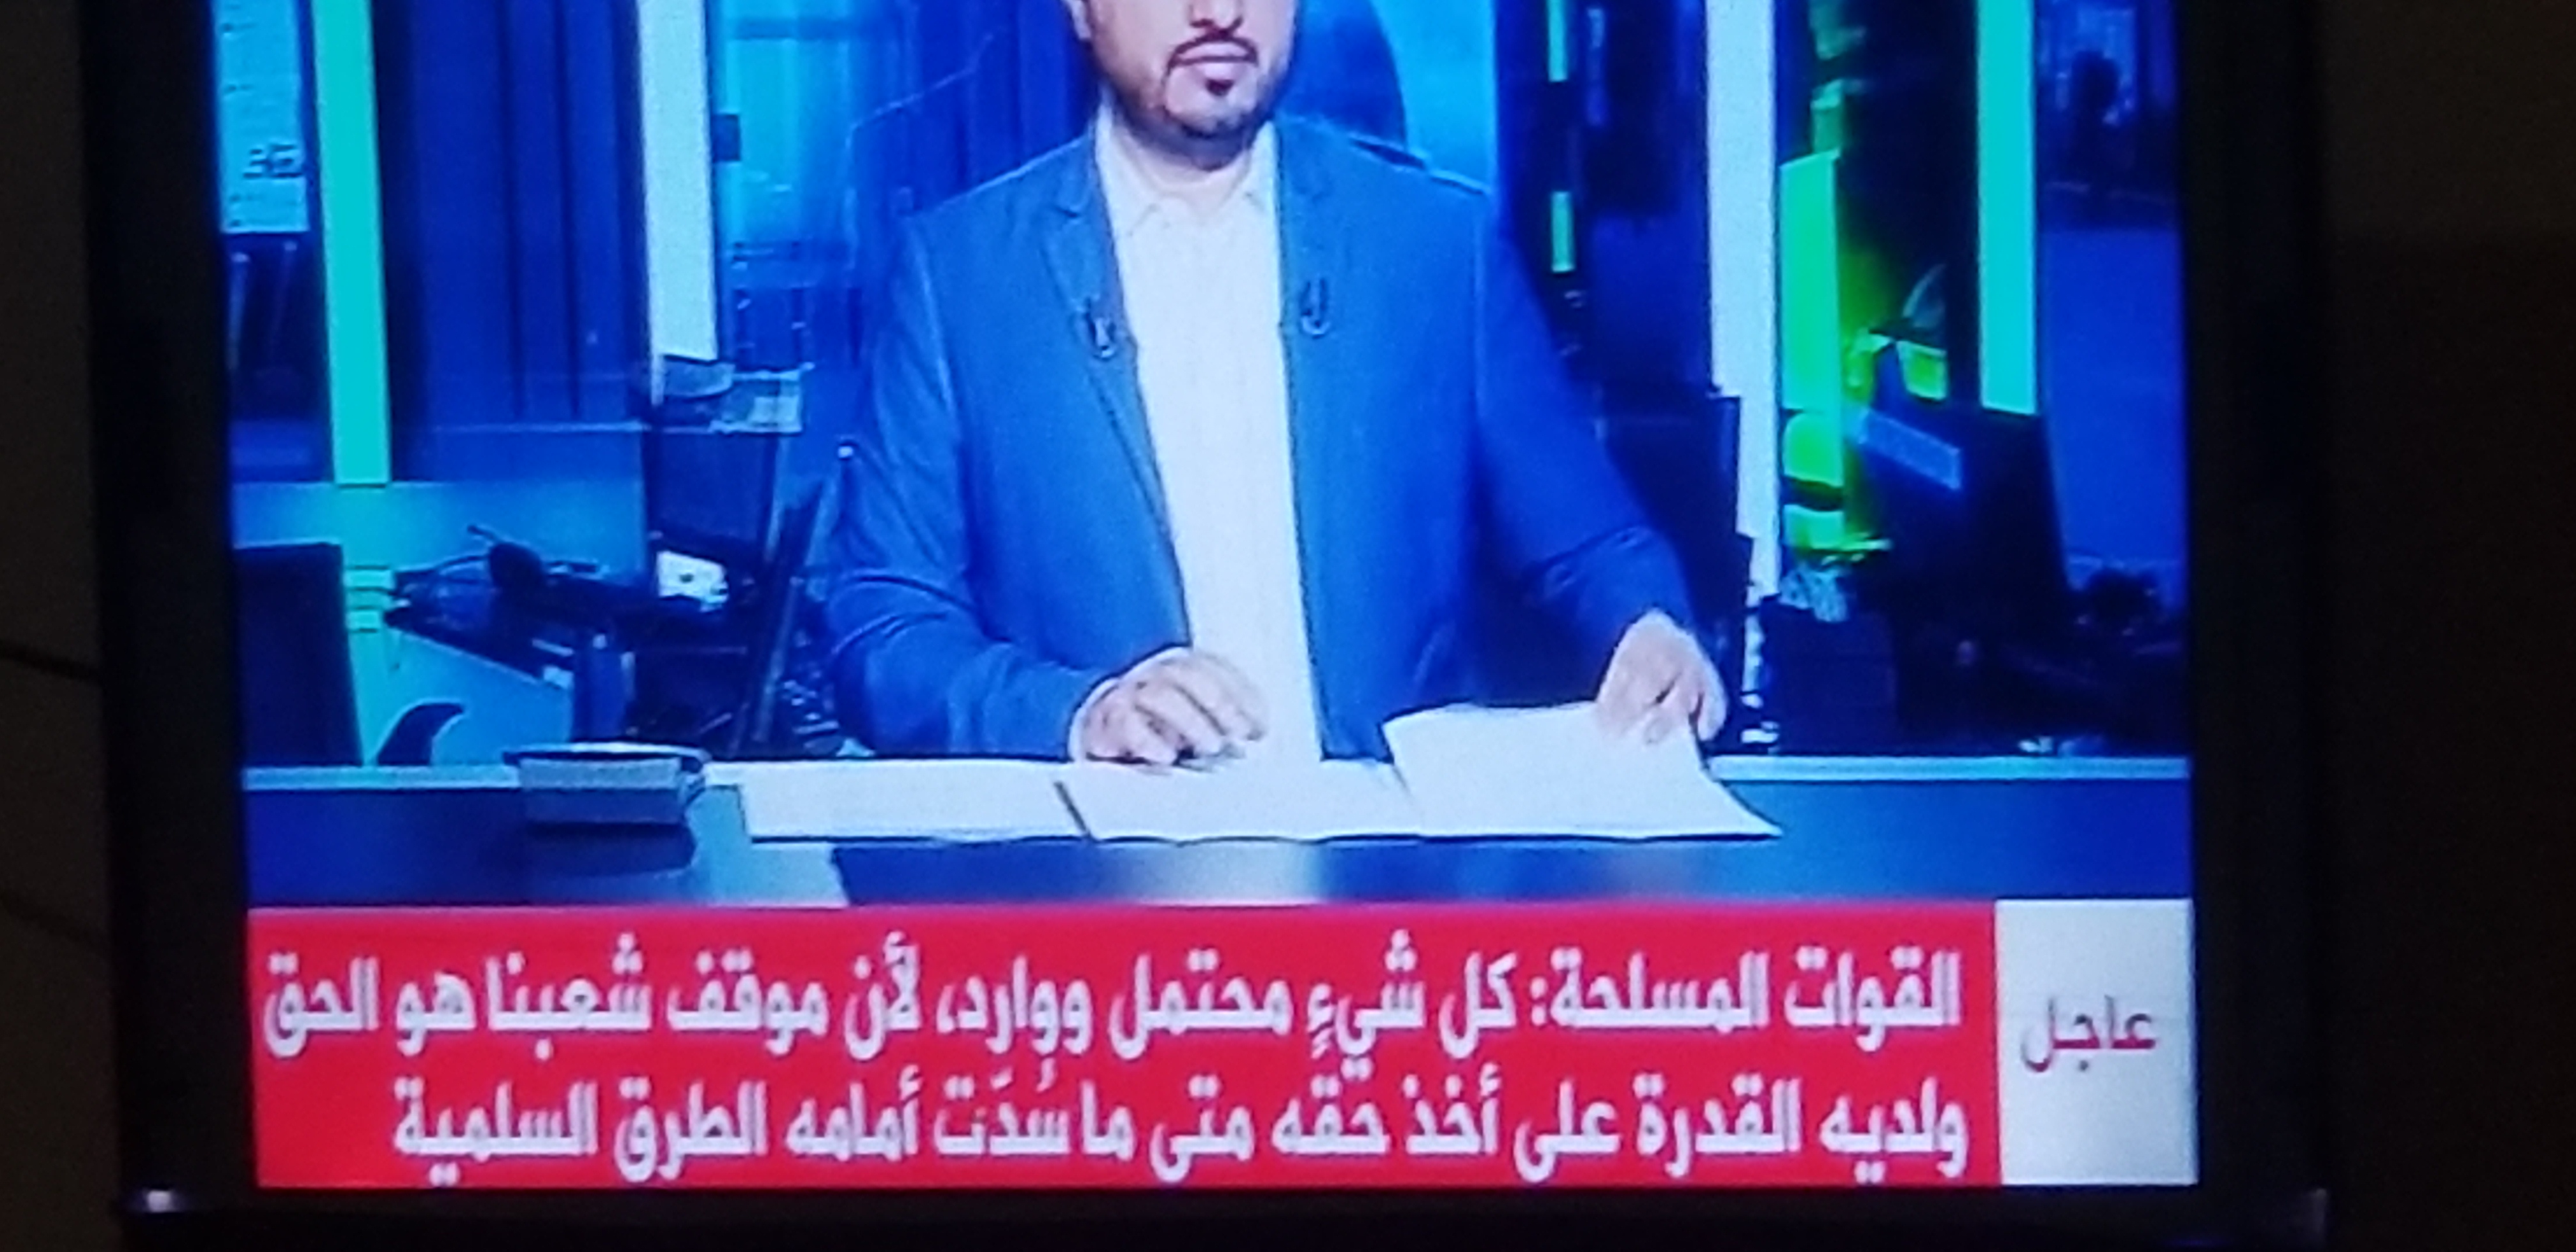 قناة المسيره تعلن الان خبر هام يرعب السعوديه والامارات ..